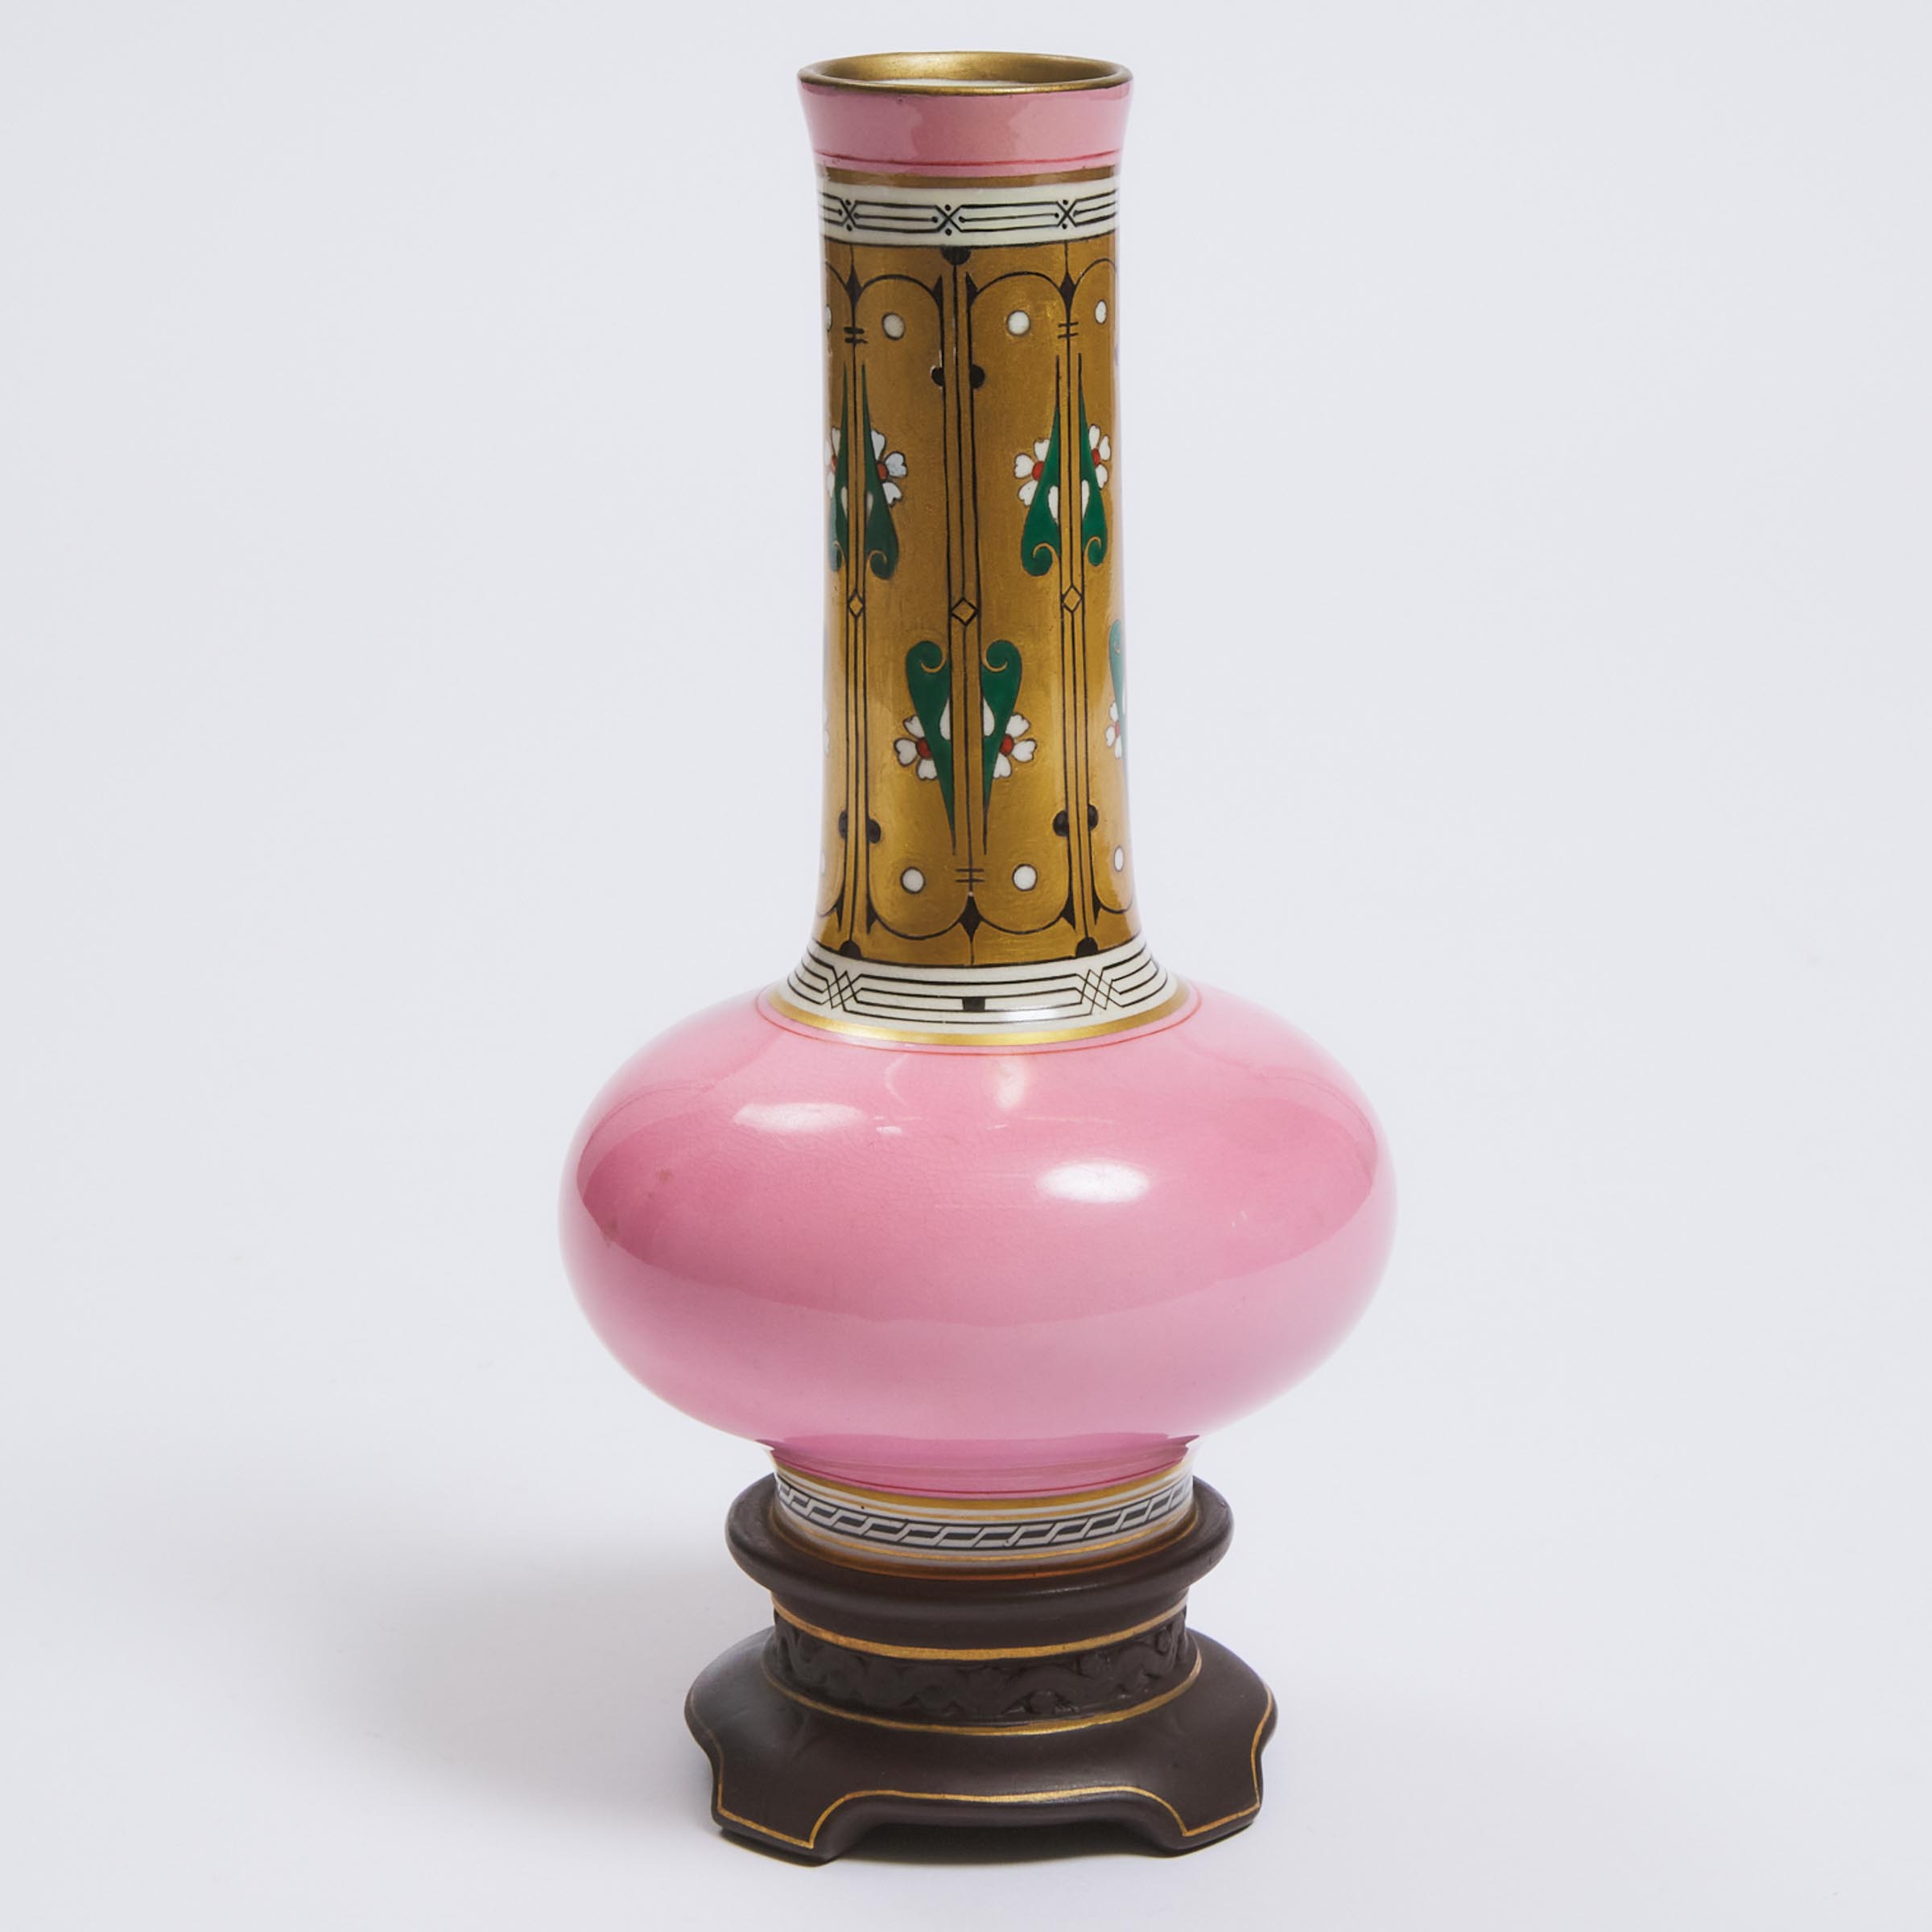 Minton 'Cloisonné' Vase, Christopher Dresser, c.1865